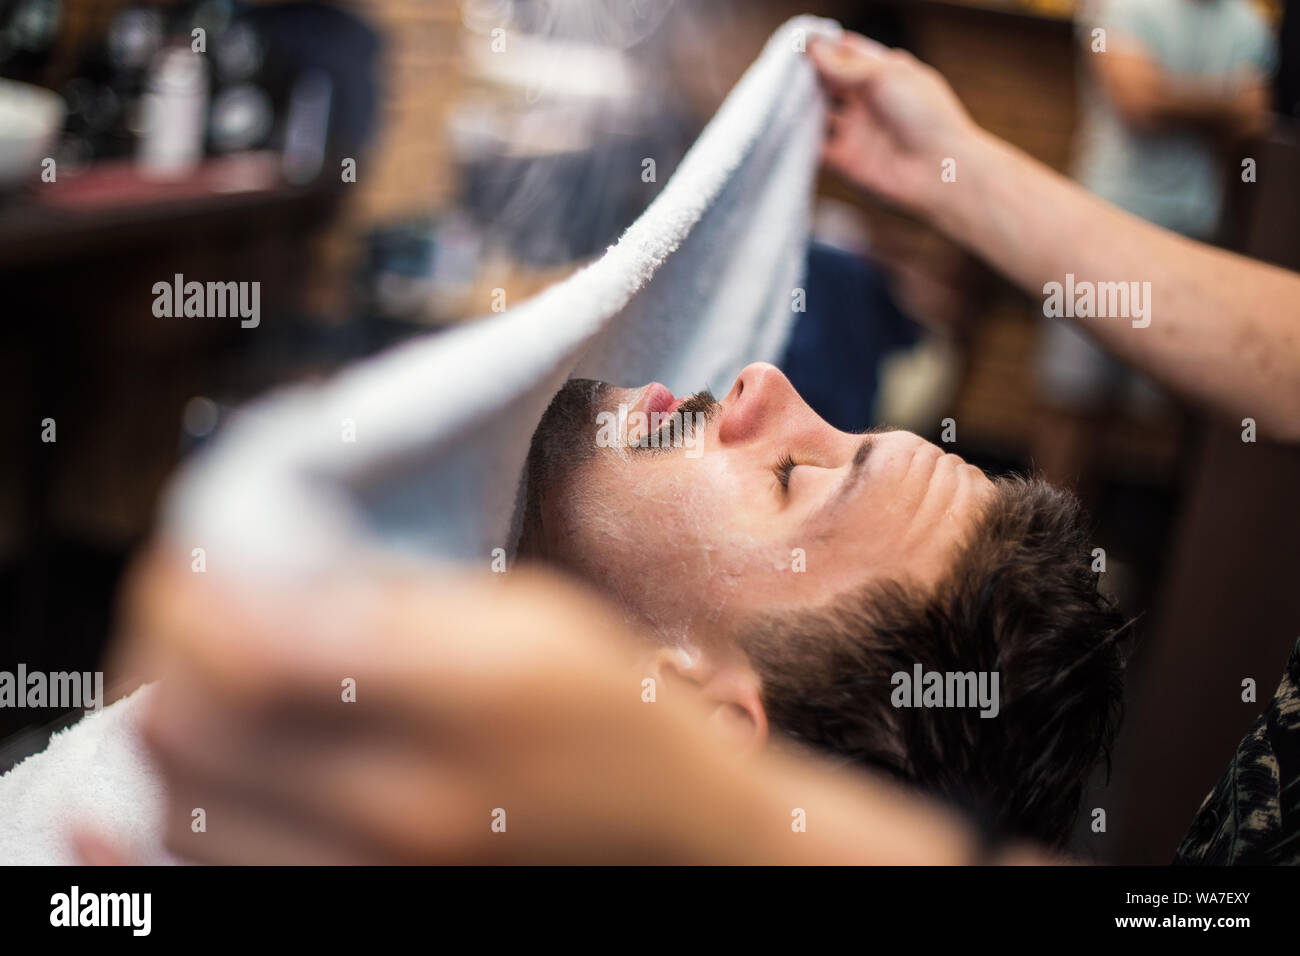 Friseur deckt das Gesicht eines Mannes mit einem warmen Handtuch. Traditionelle Ritual der Rasur des Bartes heiße und kalte Kompressen in einem alten Stil Friseur. Stockfoto